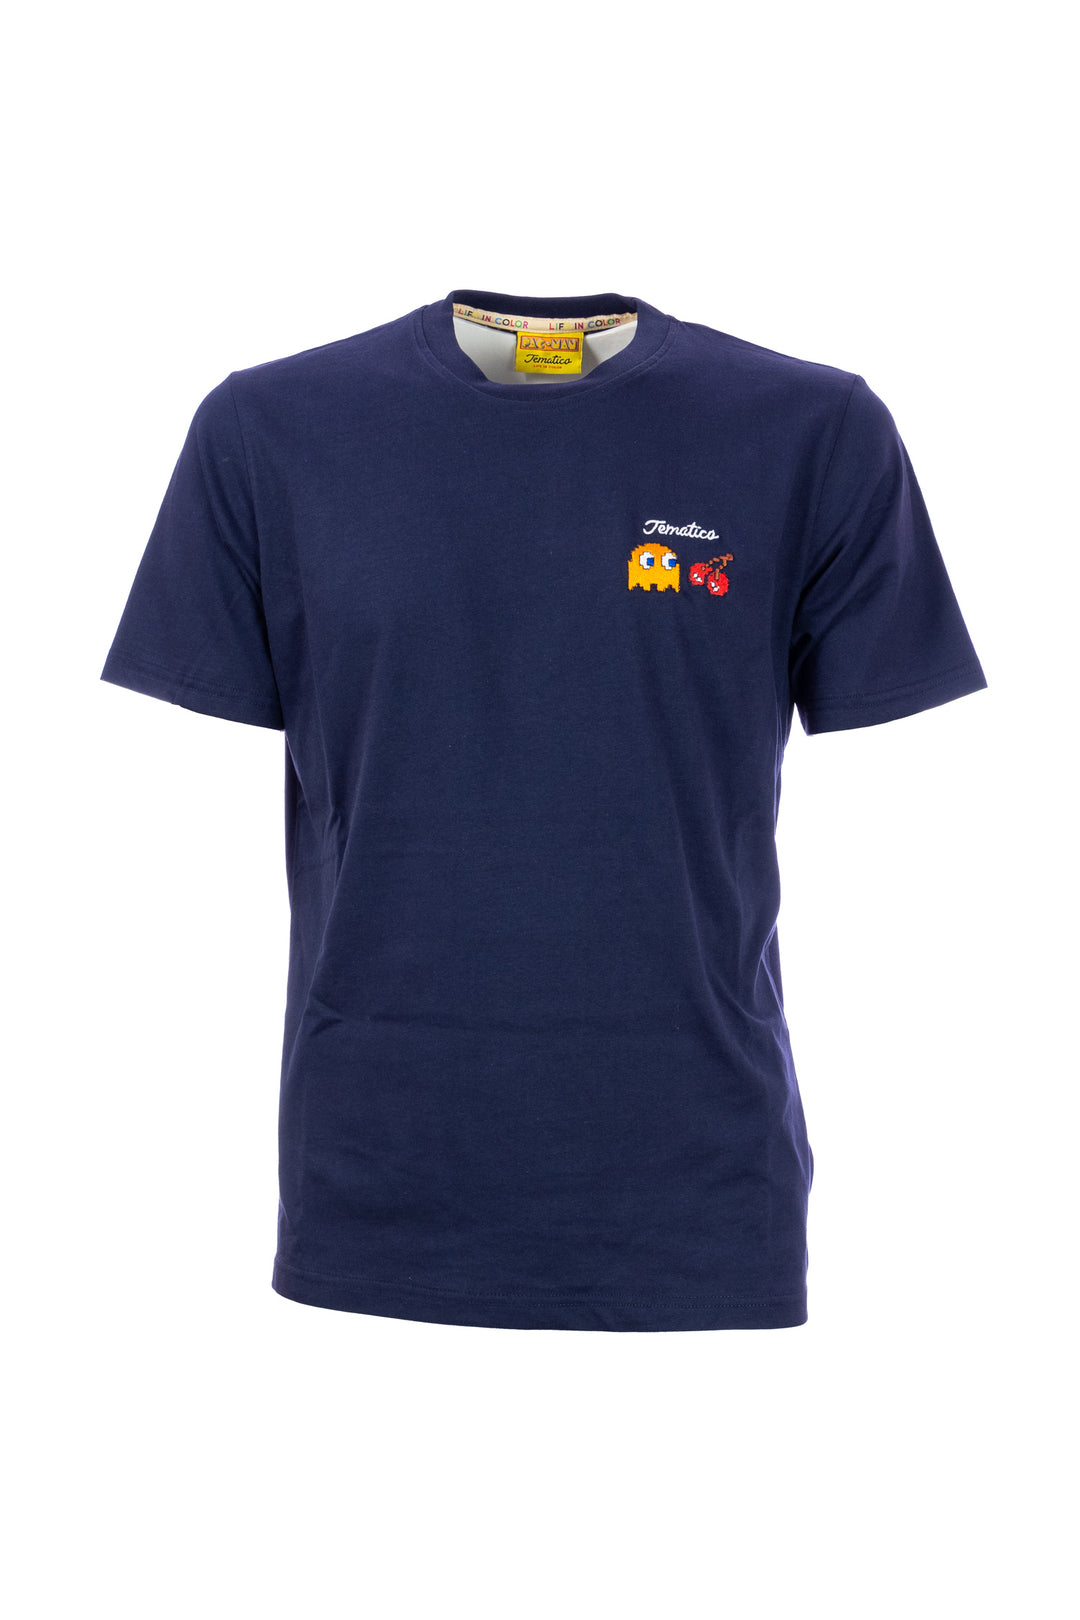 TEMATICO T-shirt blu navy in cotone con stampa Pac-Man sul petto e sulla schiena - Mancinelli 1954